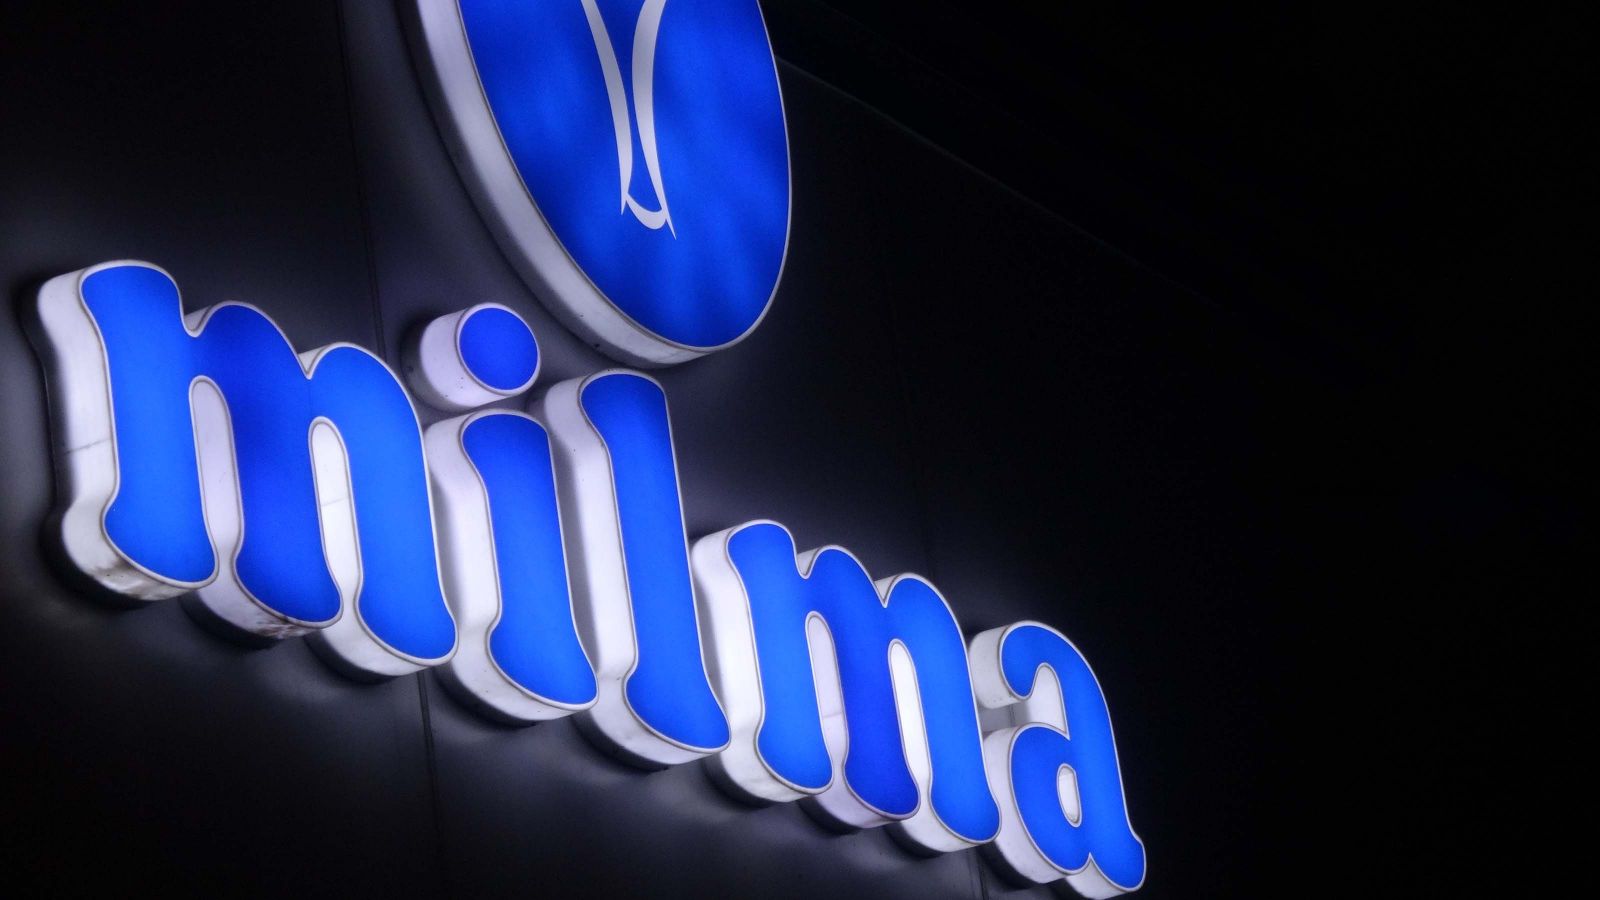 Illuminated sign for dairy company Milma